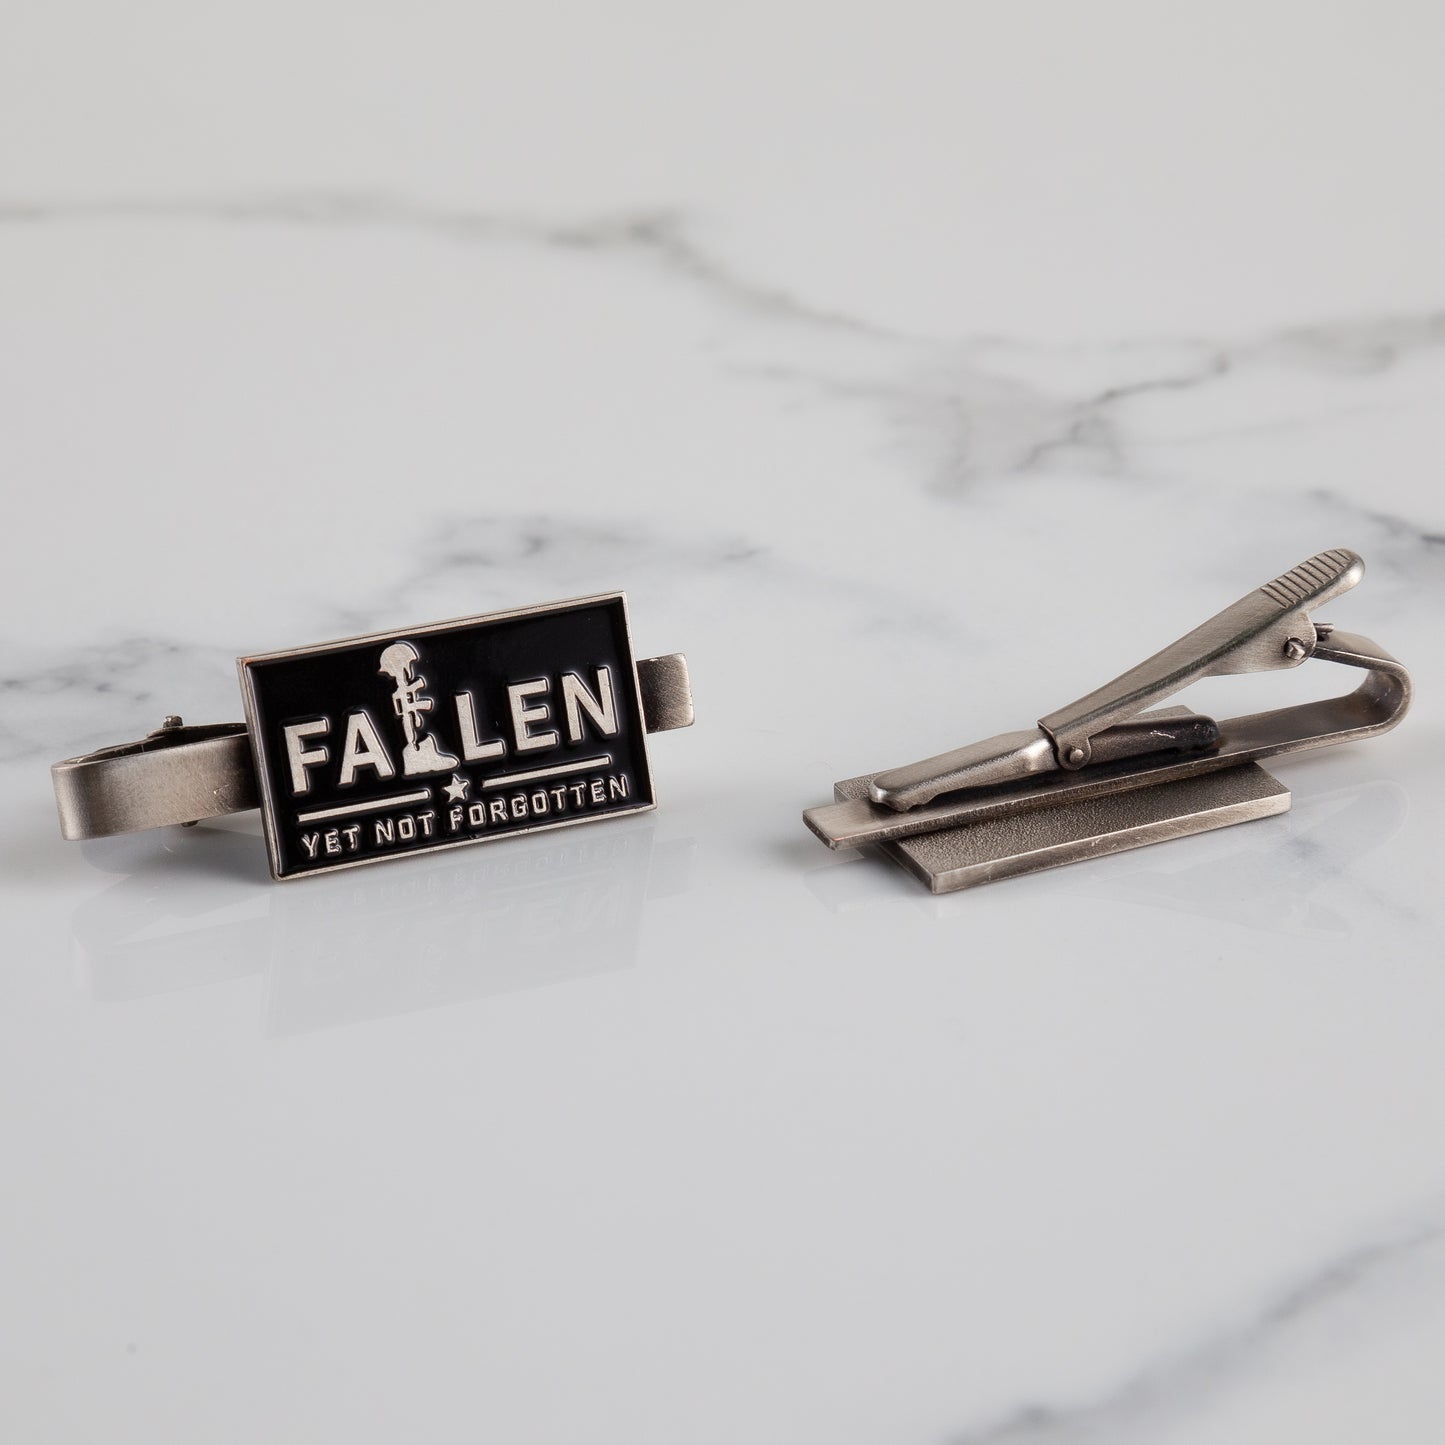 Fallen Yet Not Forgotten Tie Clip